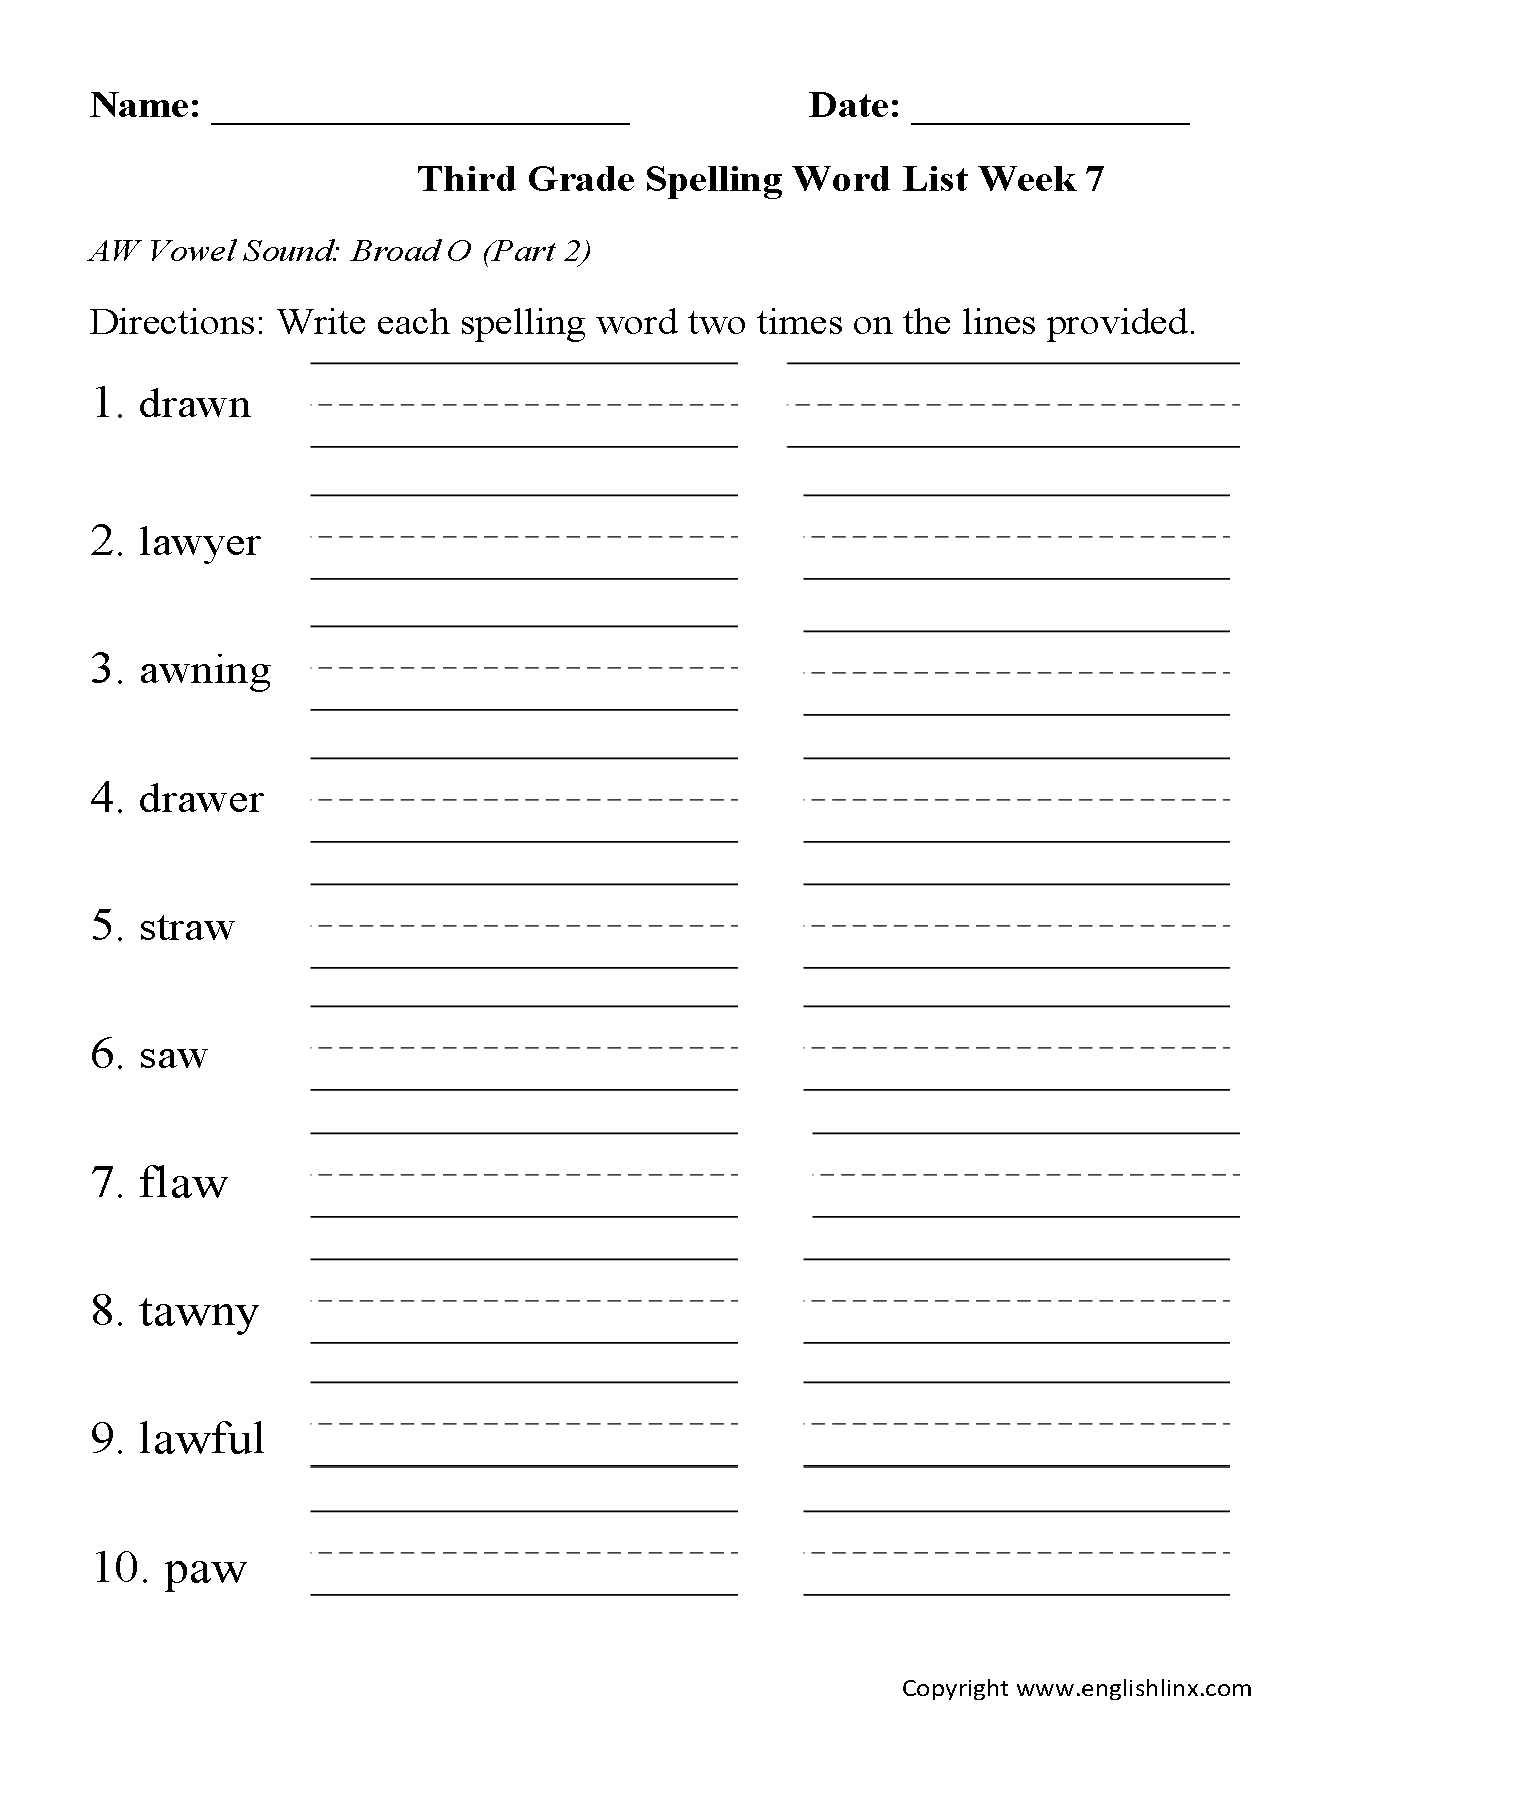 Week 4 AW Vowel Part 2 Third Grade Spelling Words Worksheets